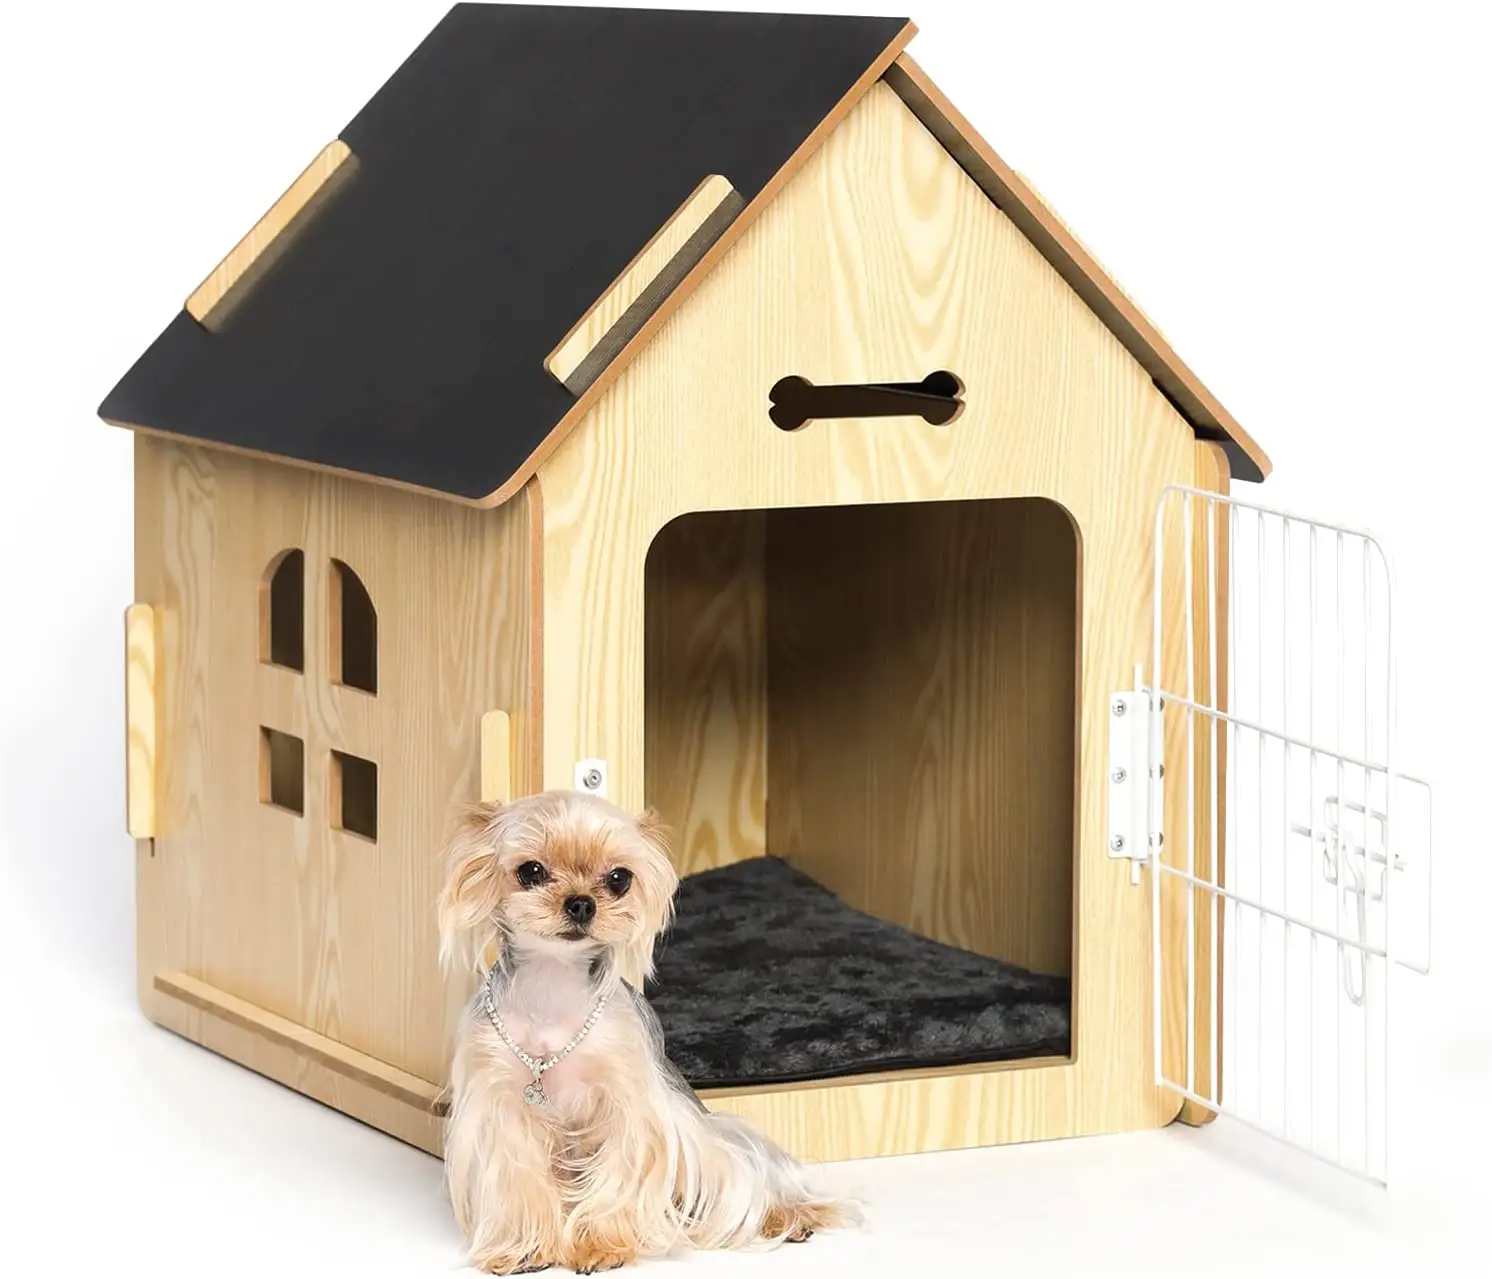 บ้านสุนัขคอกสุนัขในร่มสำหรับสุนัขขนาดเล็กหรือสัตว์ขนาดเล็กอื่นๆเช่นแมวและกระต่าย